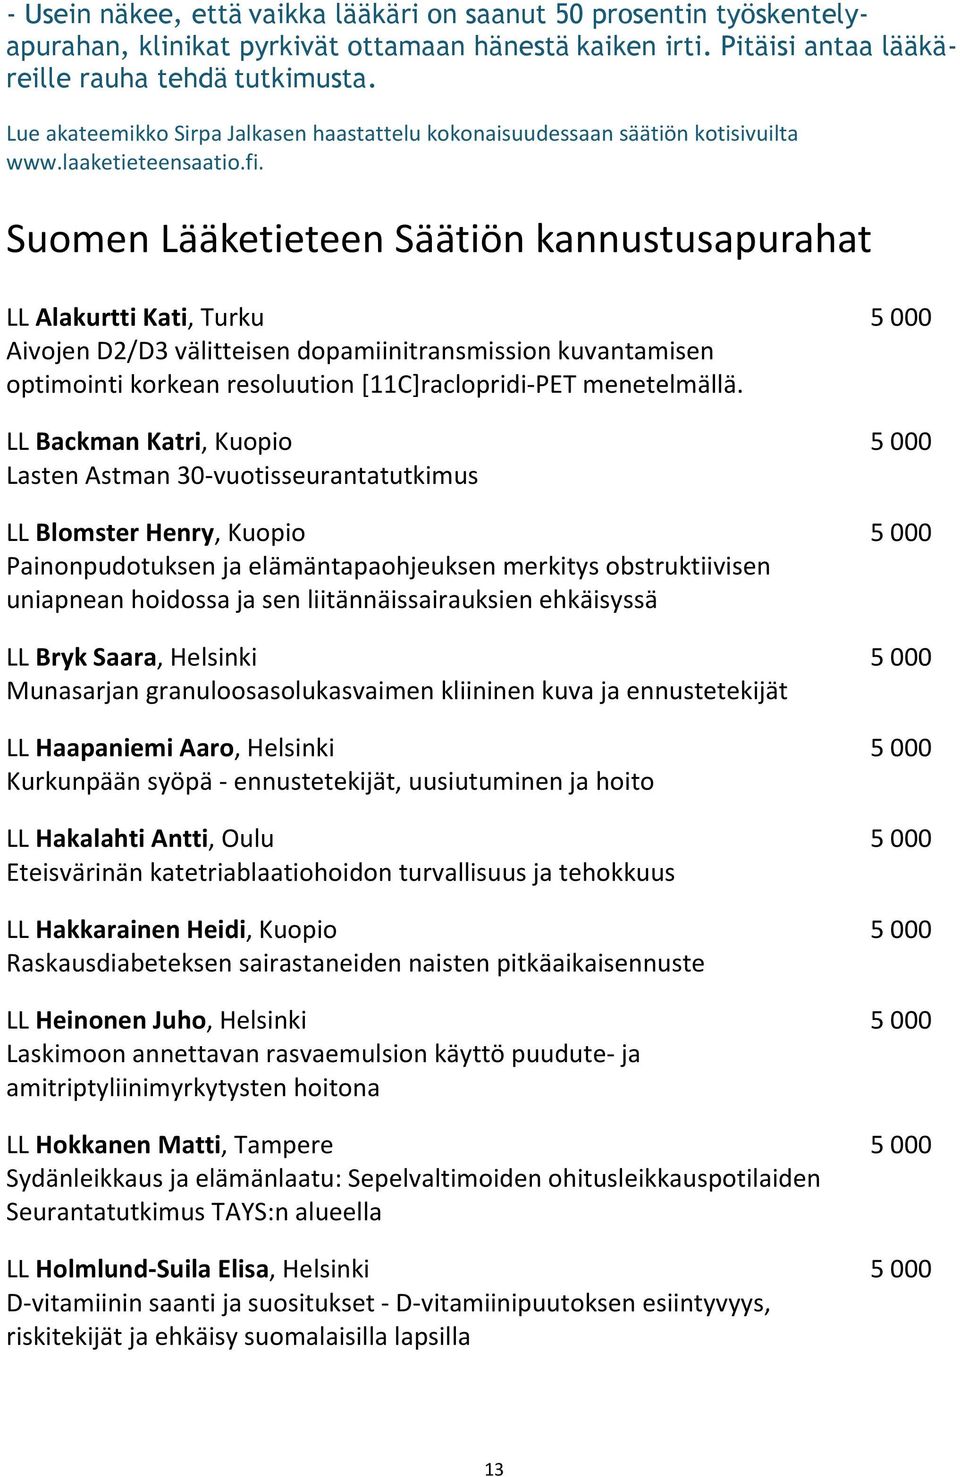 Suomen Lääketieteen Säätiön kannustusapurahat LL Alakurtti Kati, Turku 5 000 Aivojen D2/D3 välitteisen dopamiinitransmission kuvantamisen optimointi korkean resoluution [11C]raclopridi-PET